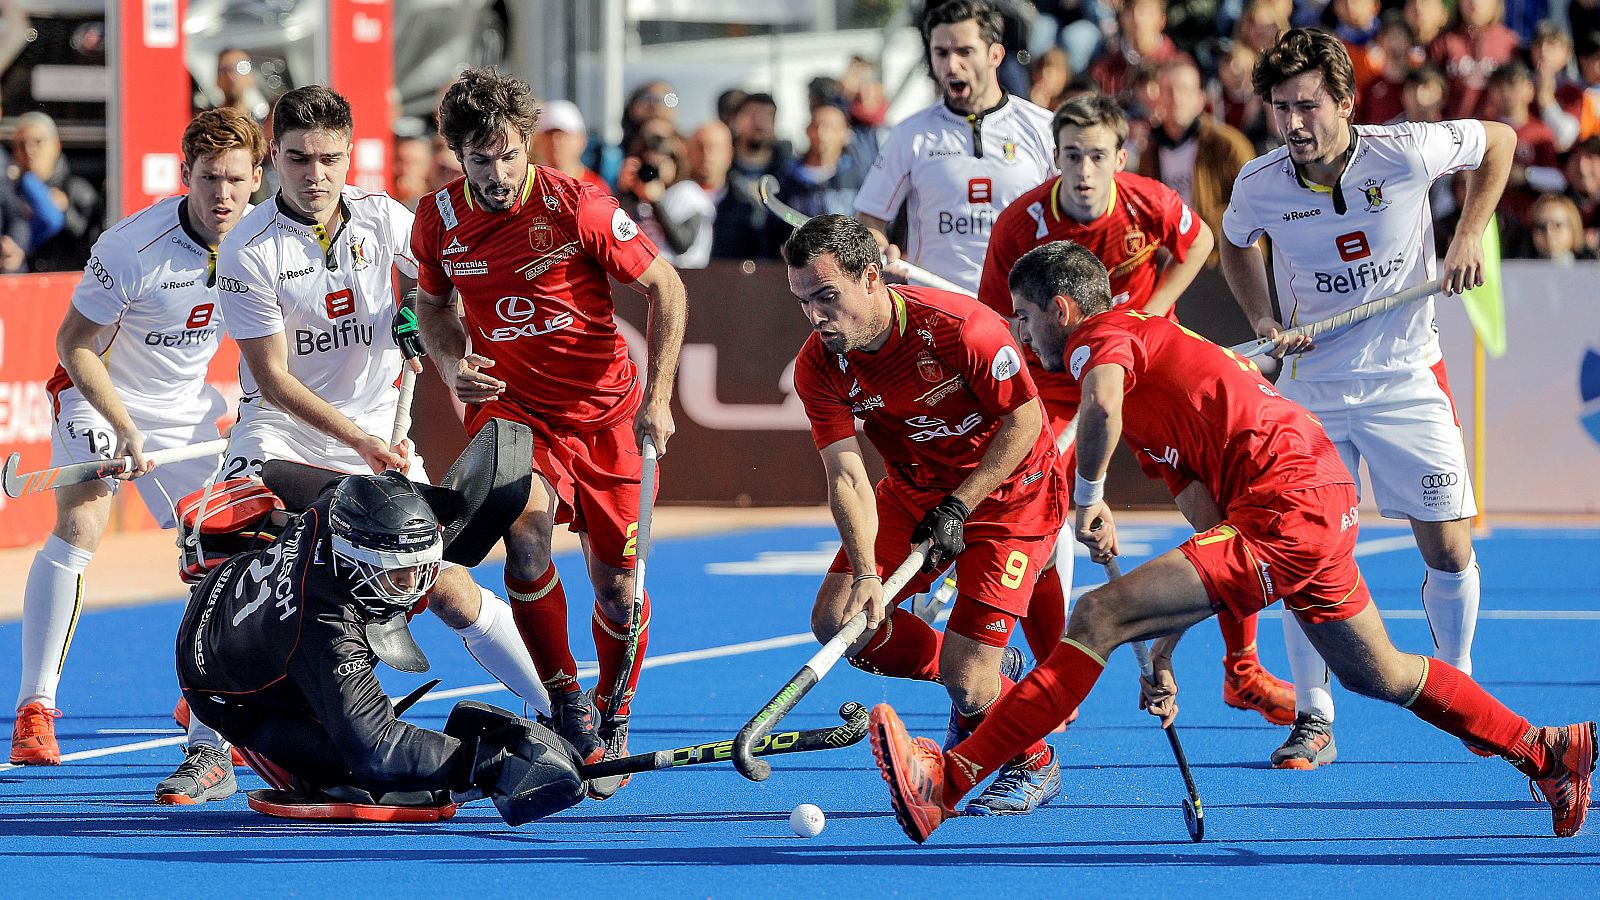 España debuta en hockey hierba contra Bélgica, anfitriona del Europeo.